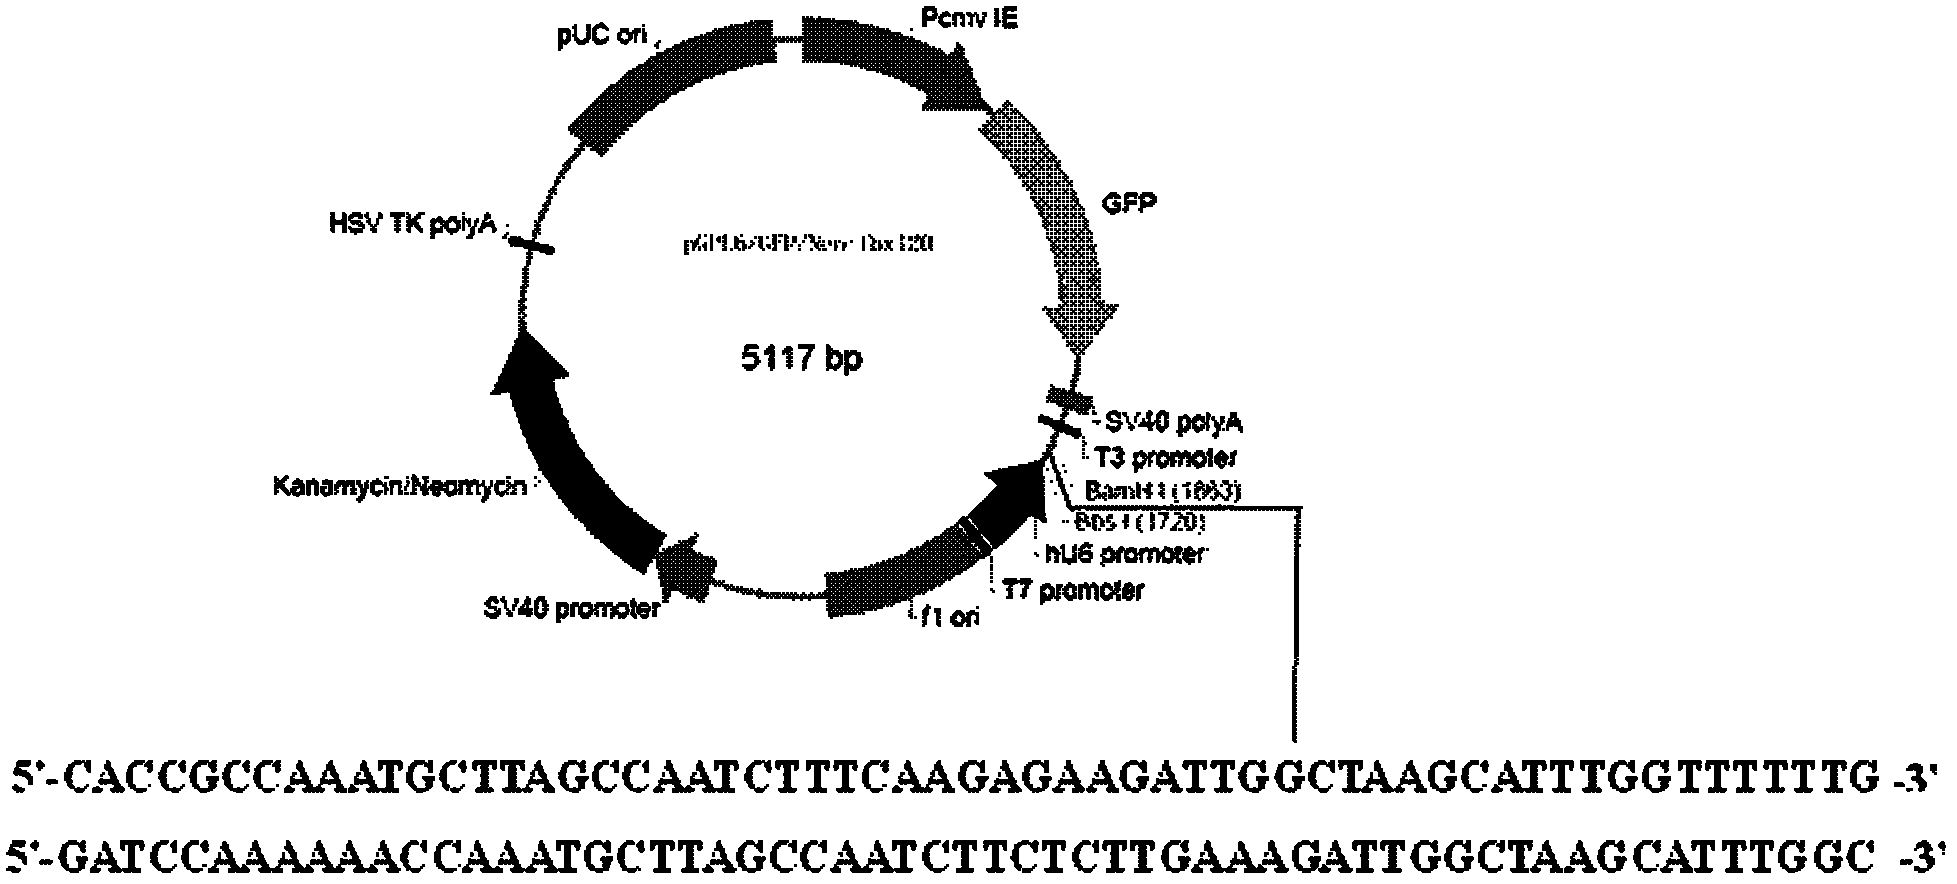 Eukaryon recombinant plasmid, preparation process and applications thereof